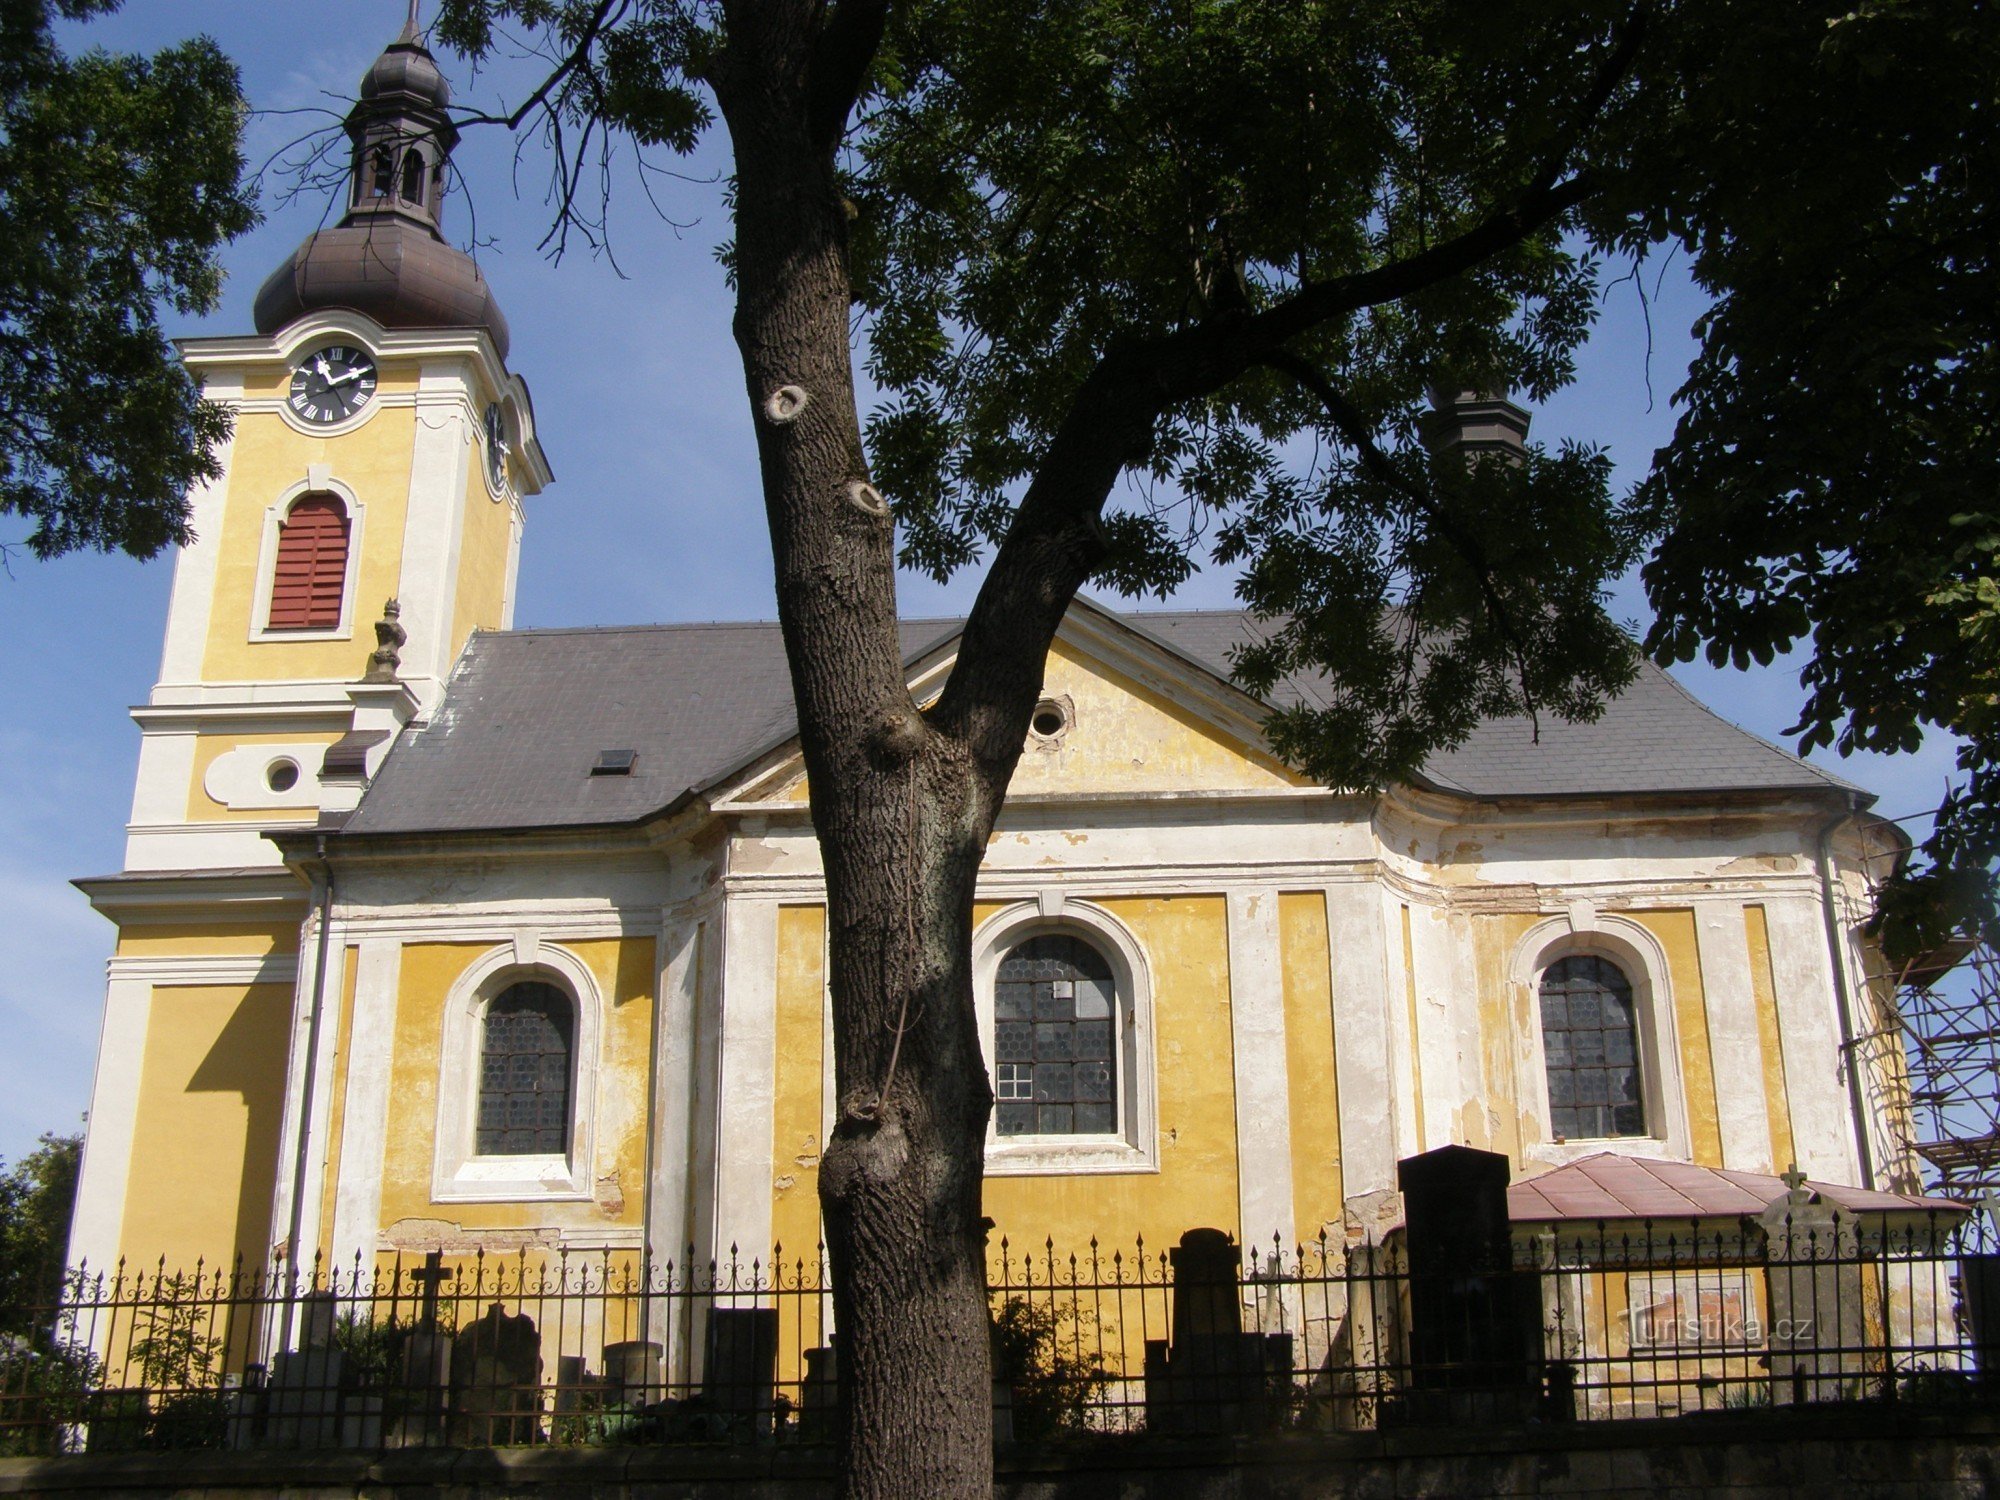 Chroustov - Igreja da Assunção da Virgem Maria